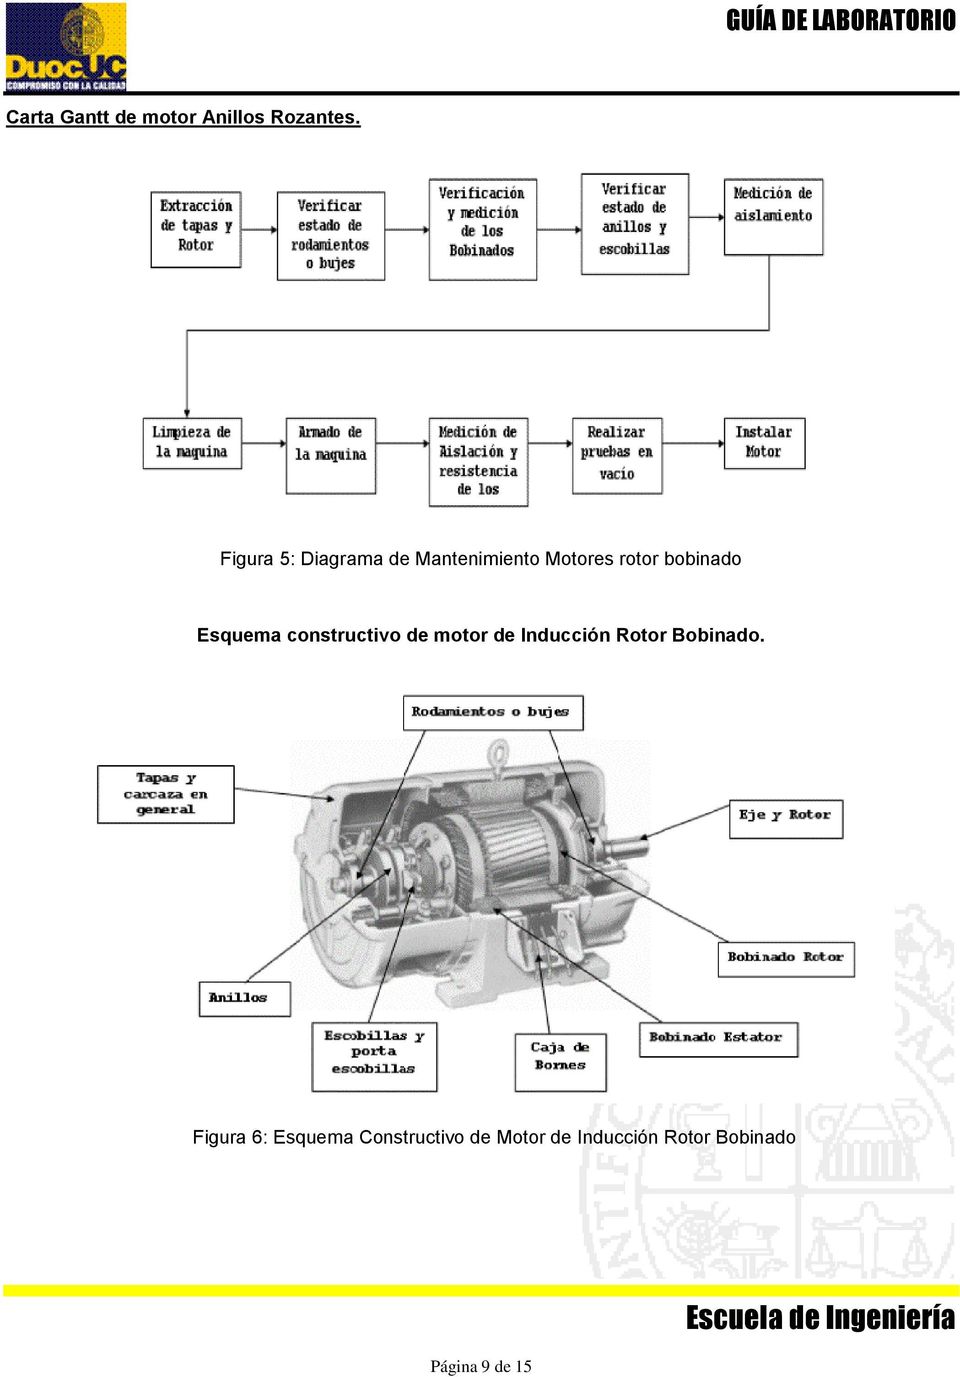 Esquema constructivo de motor de Inducción Rotor Bobinado.